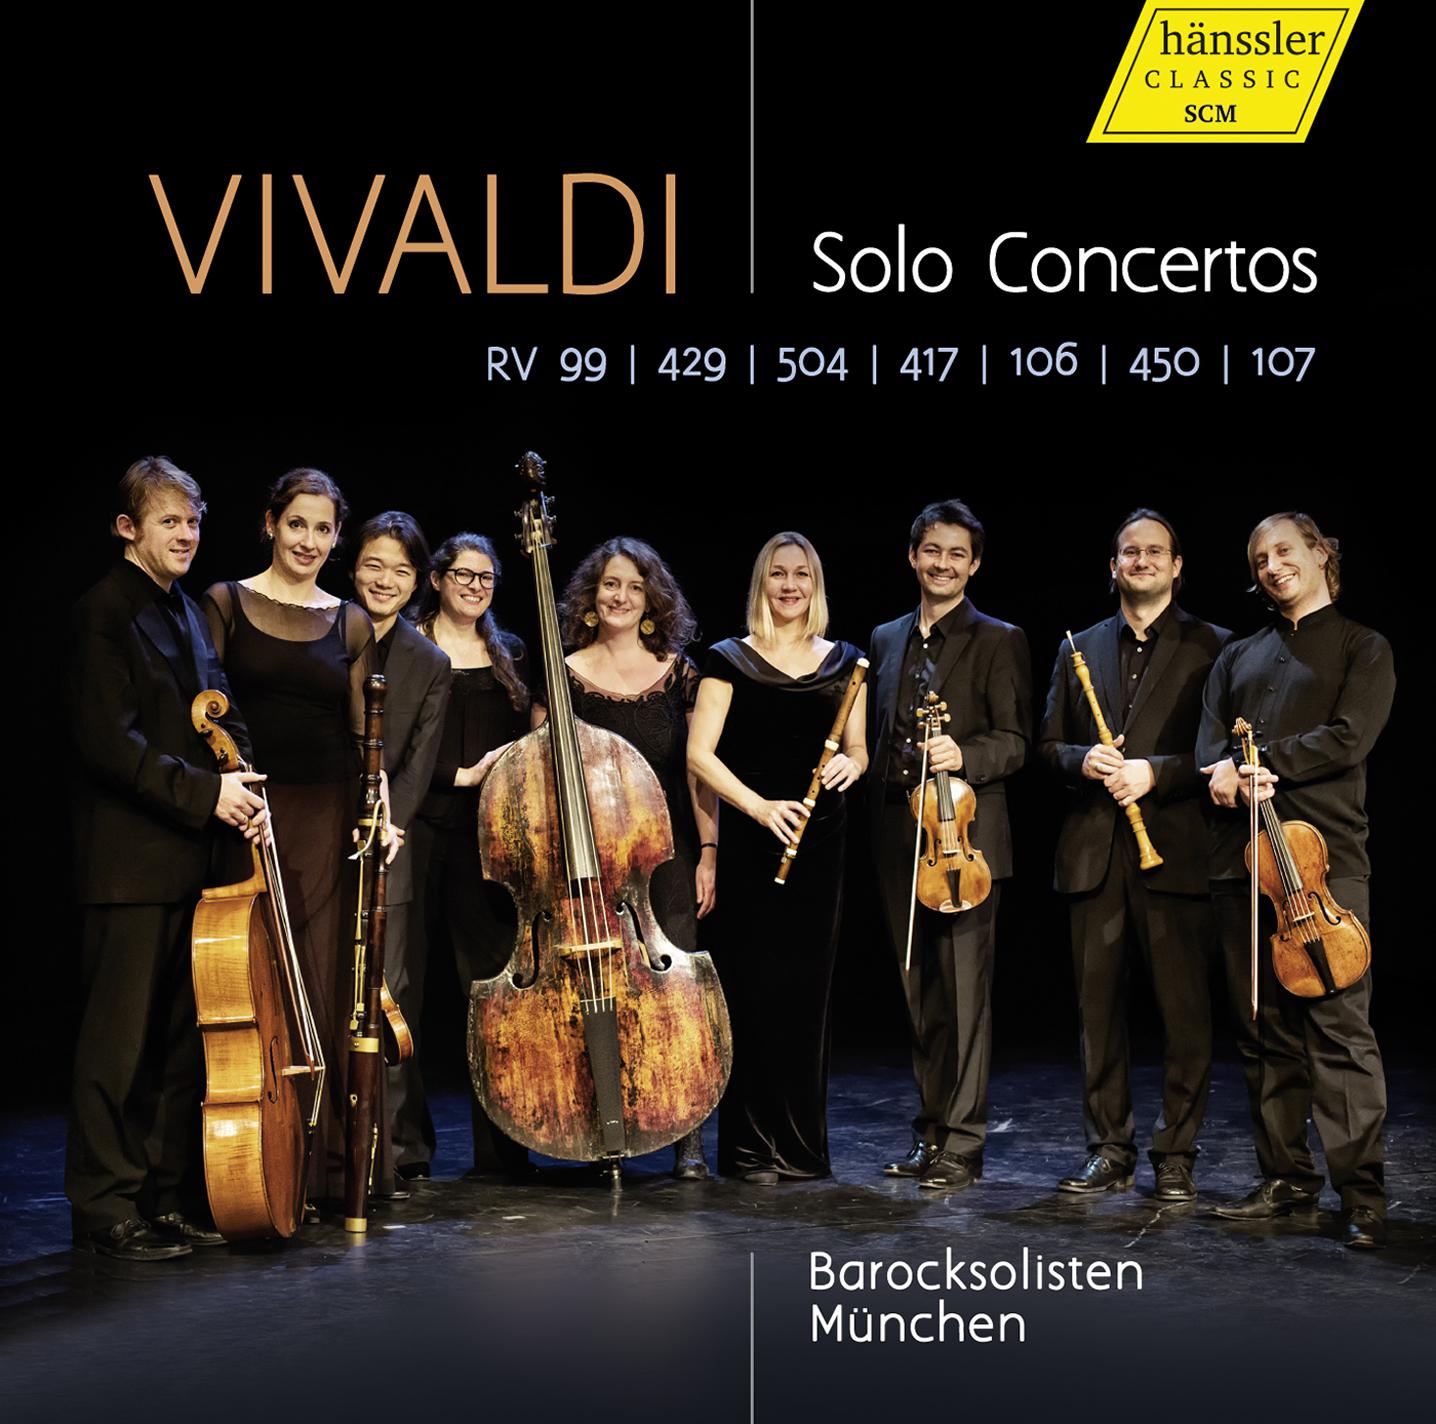 Cello Concerto in G Minor, RV 417: I. Allegro